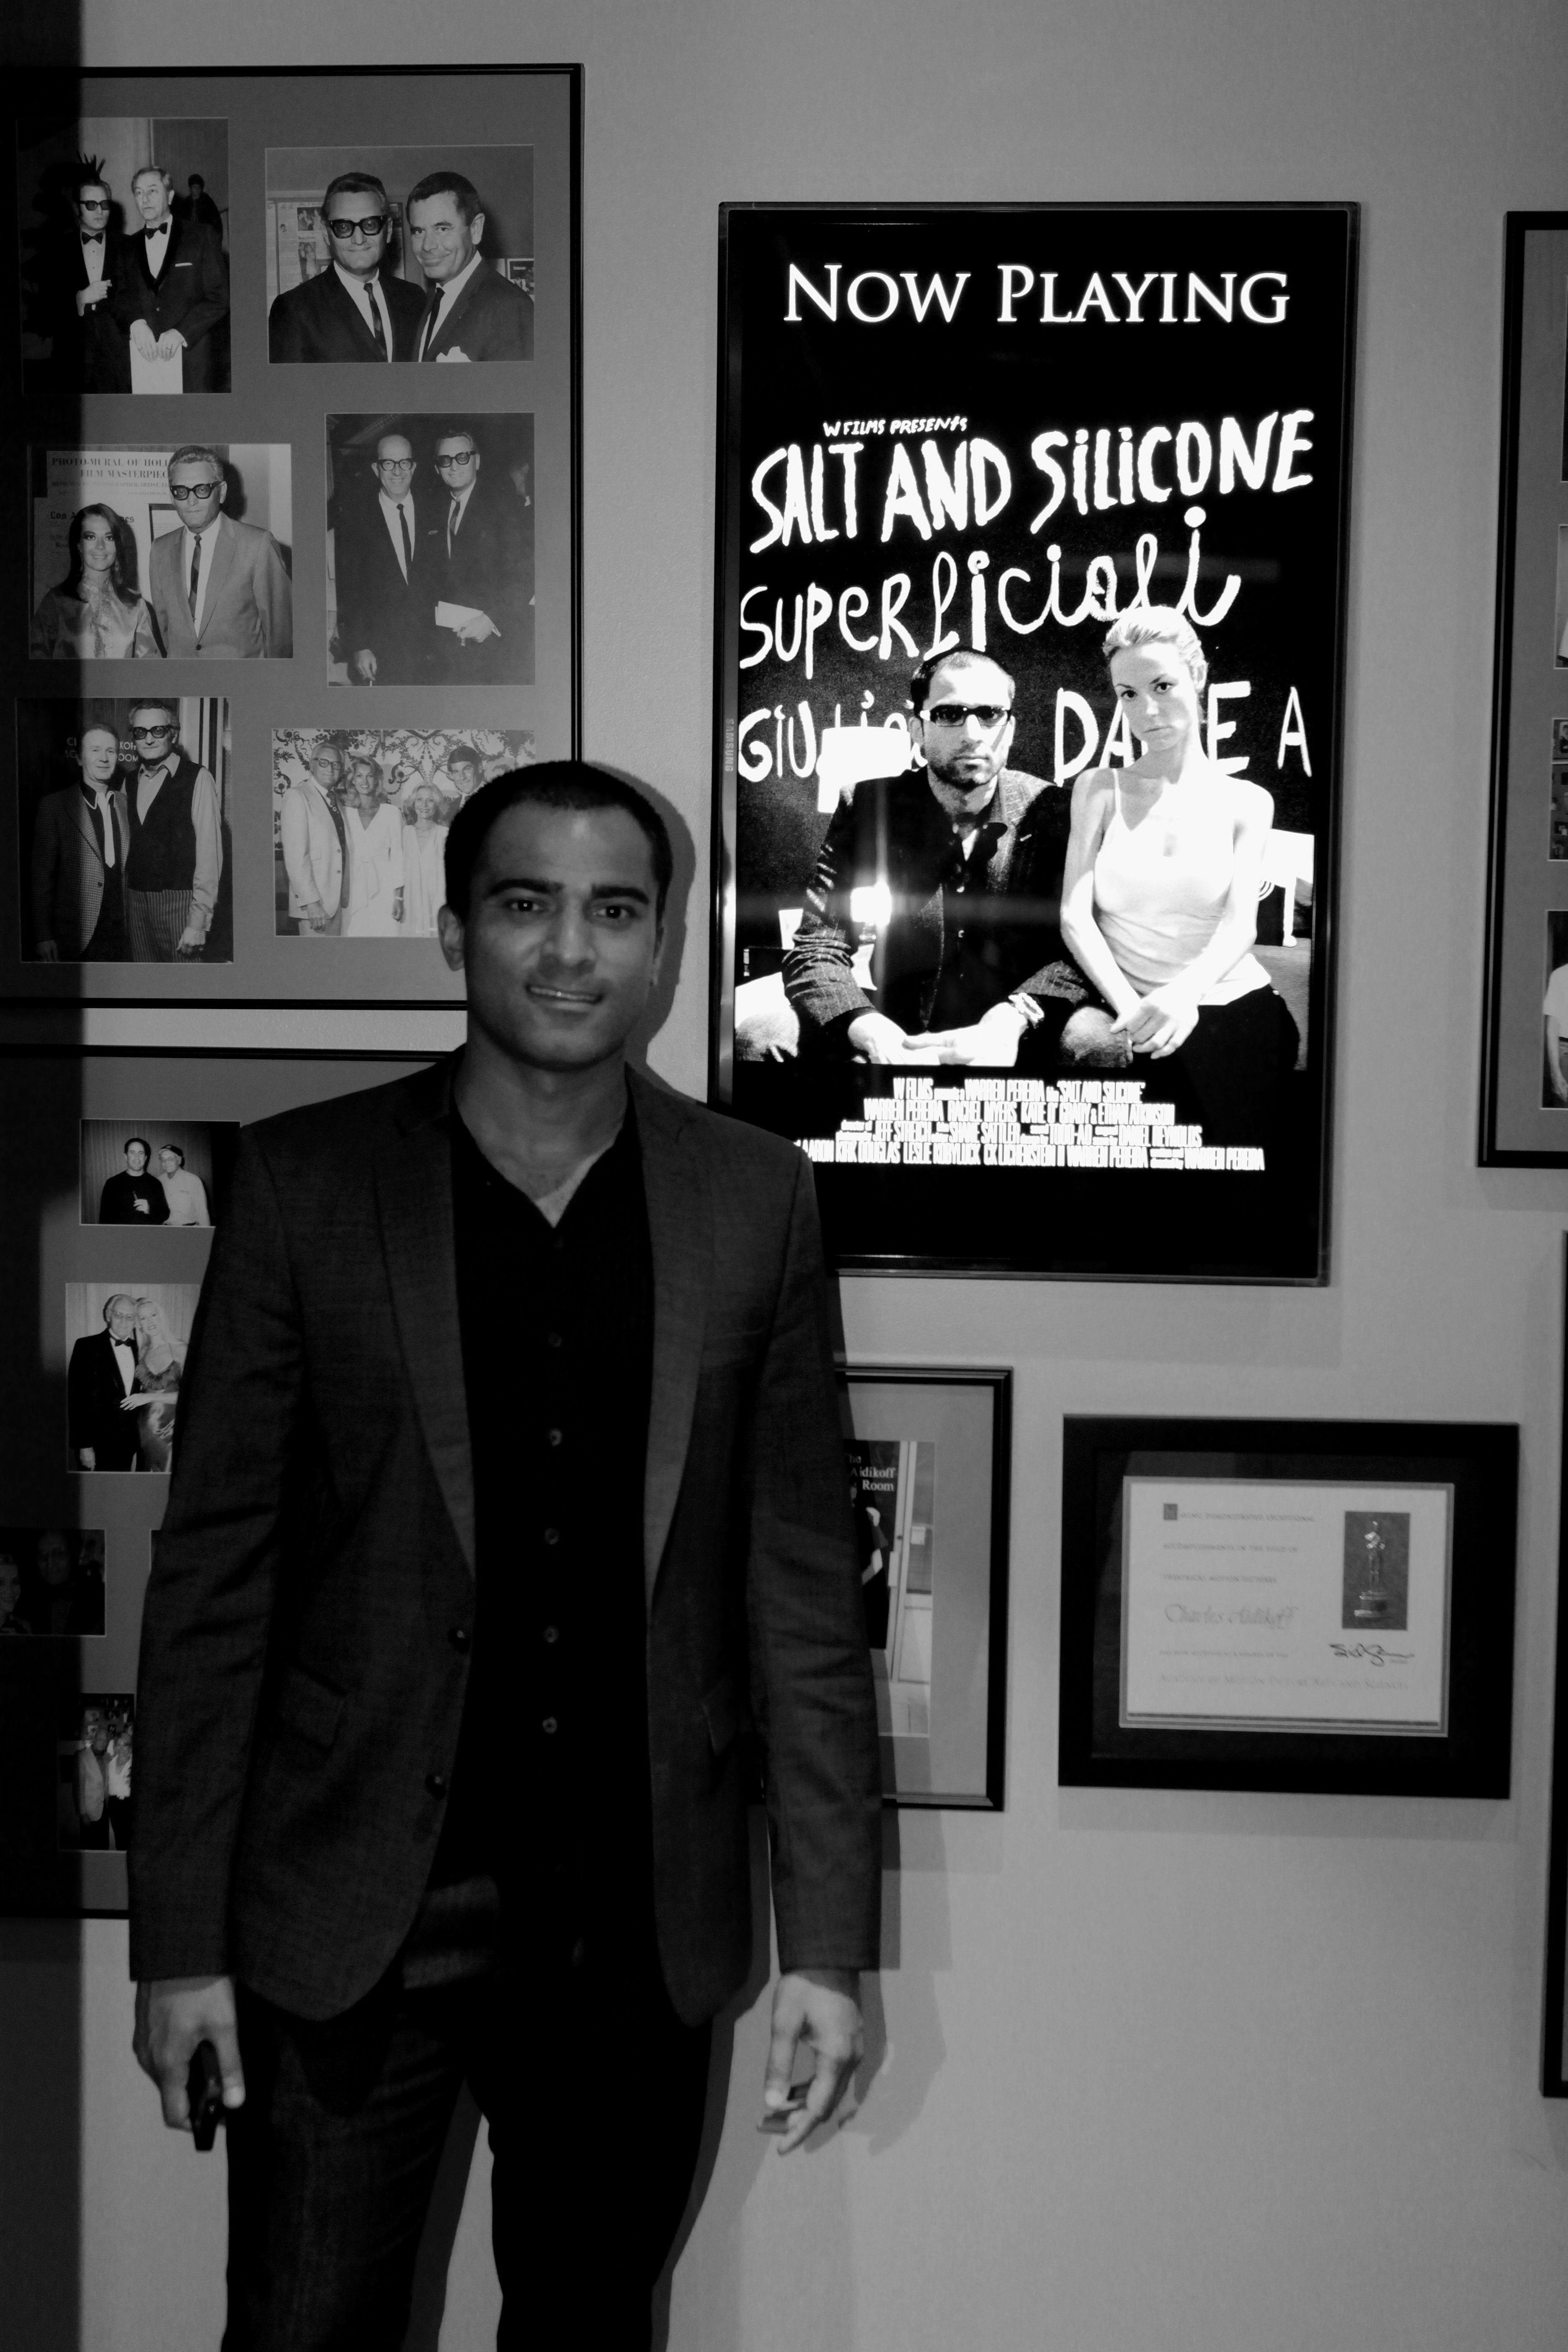 Pereira at SALT AND SILICONE Screening at Aidikoff. Oct 19, 2011